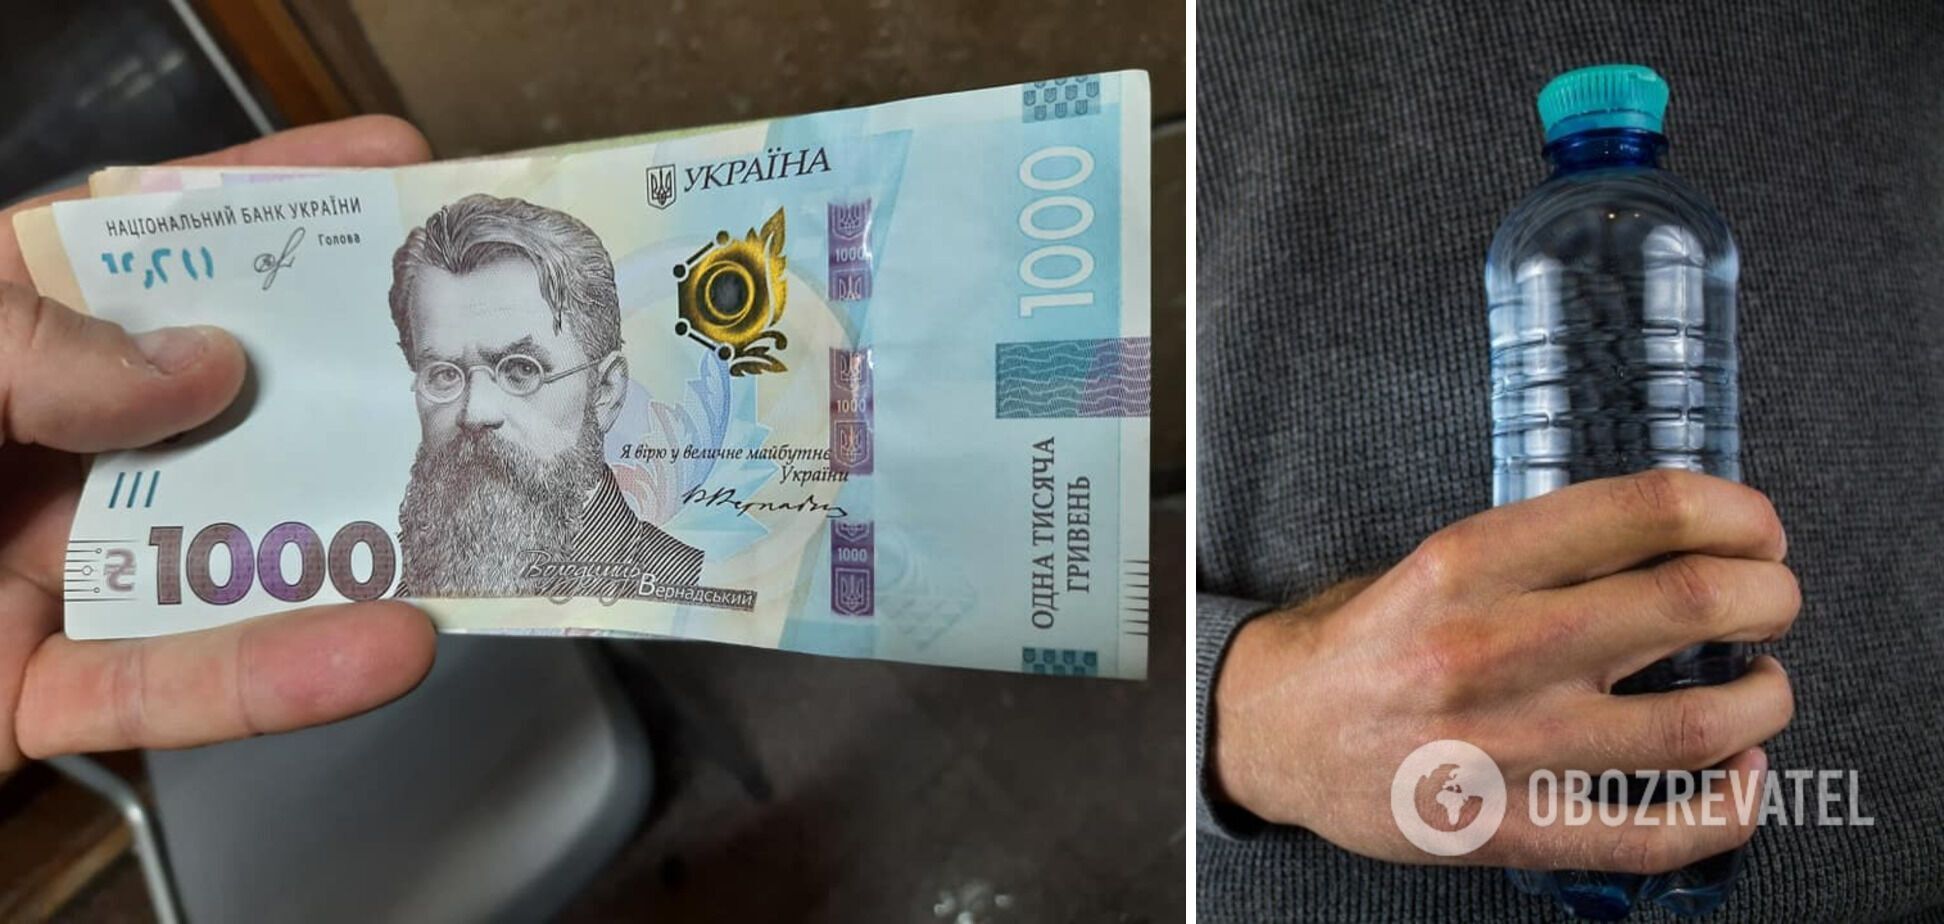 Продавец воды украл у покупателя тысячу гривен.